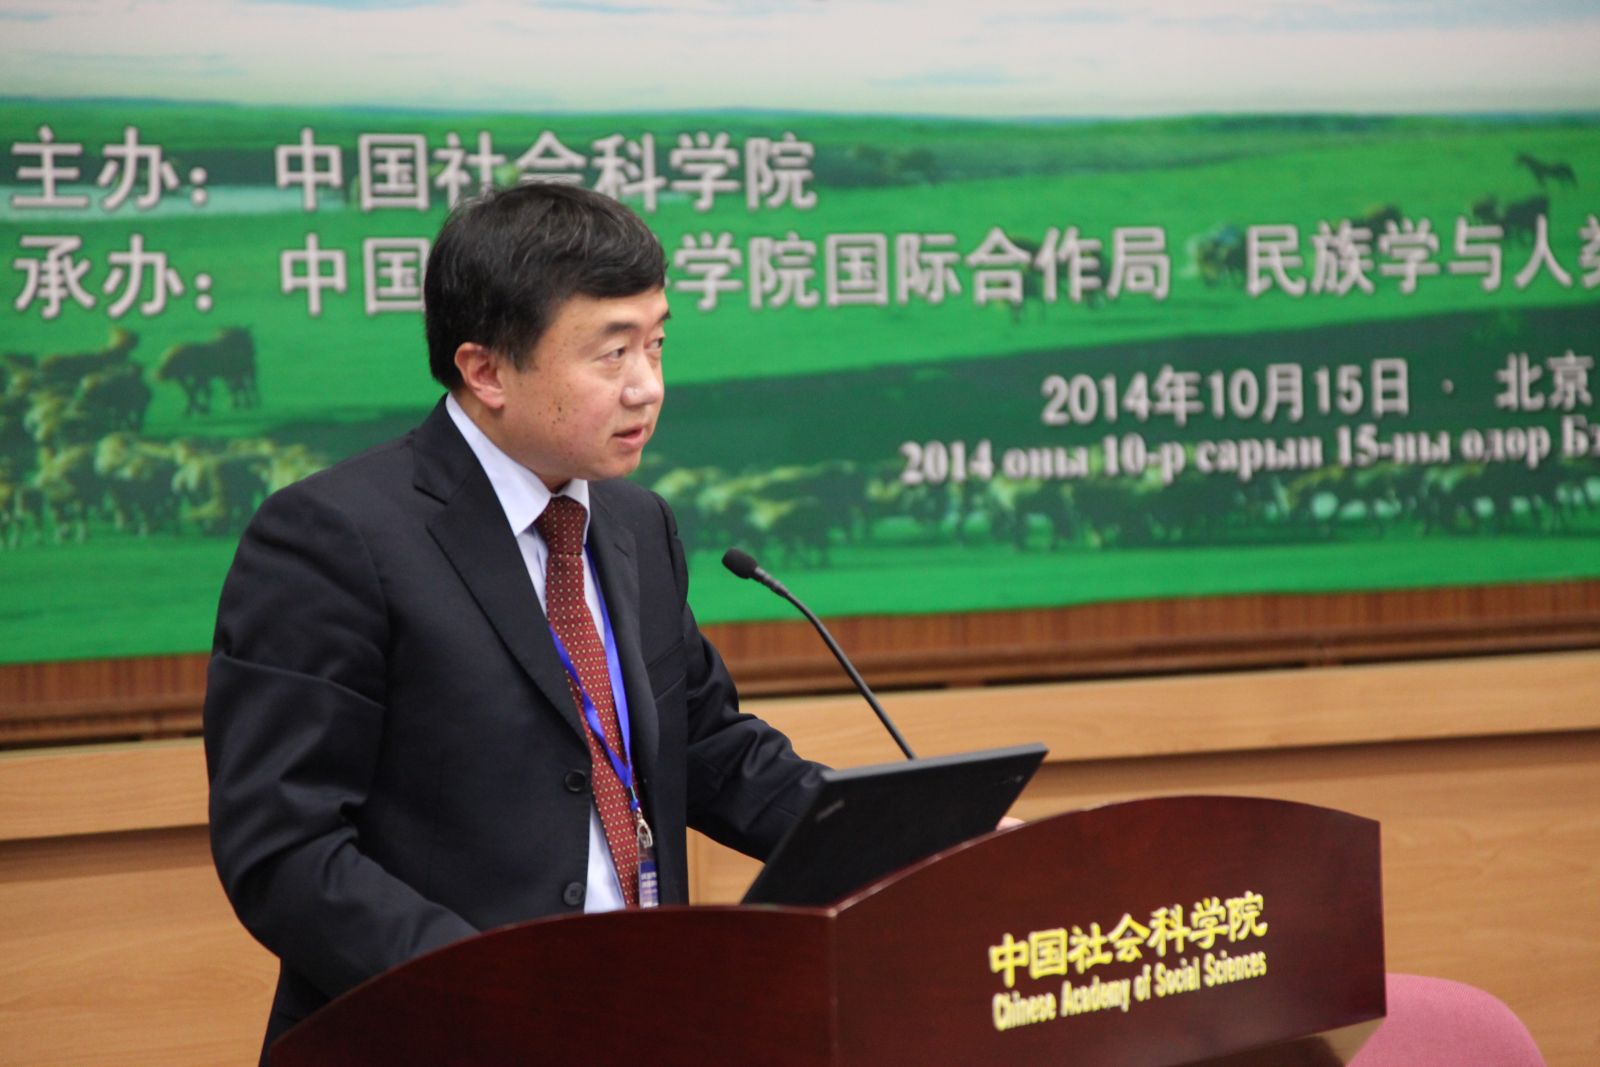 中国社会科学院监察局局长孙壮志研究员做主题报告：“共建丝绸之路经济带与中蒙战略合作”